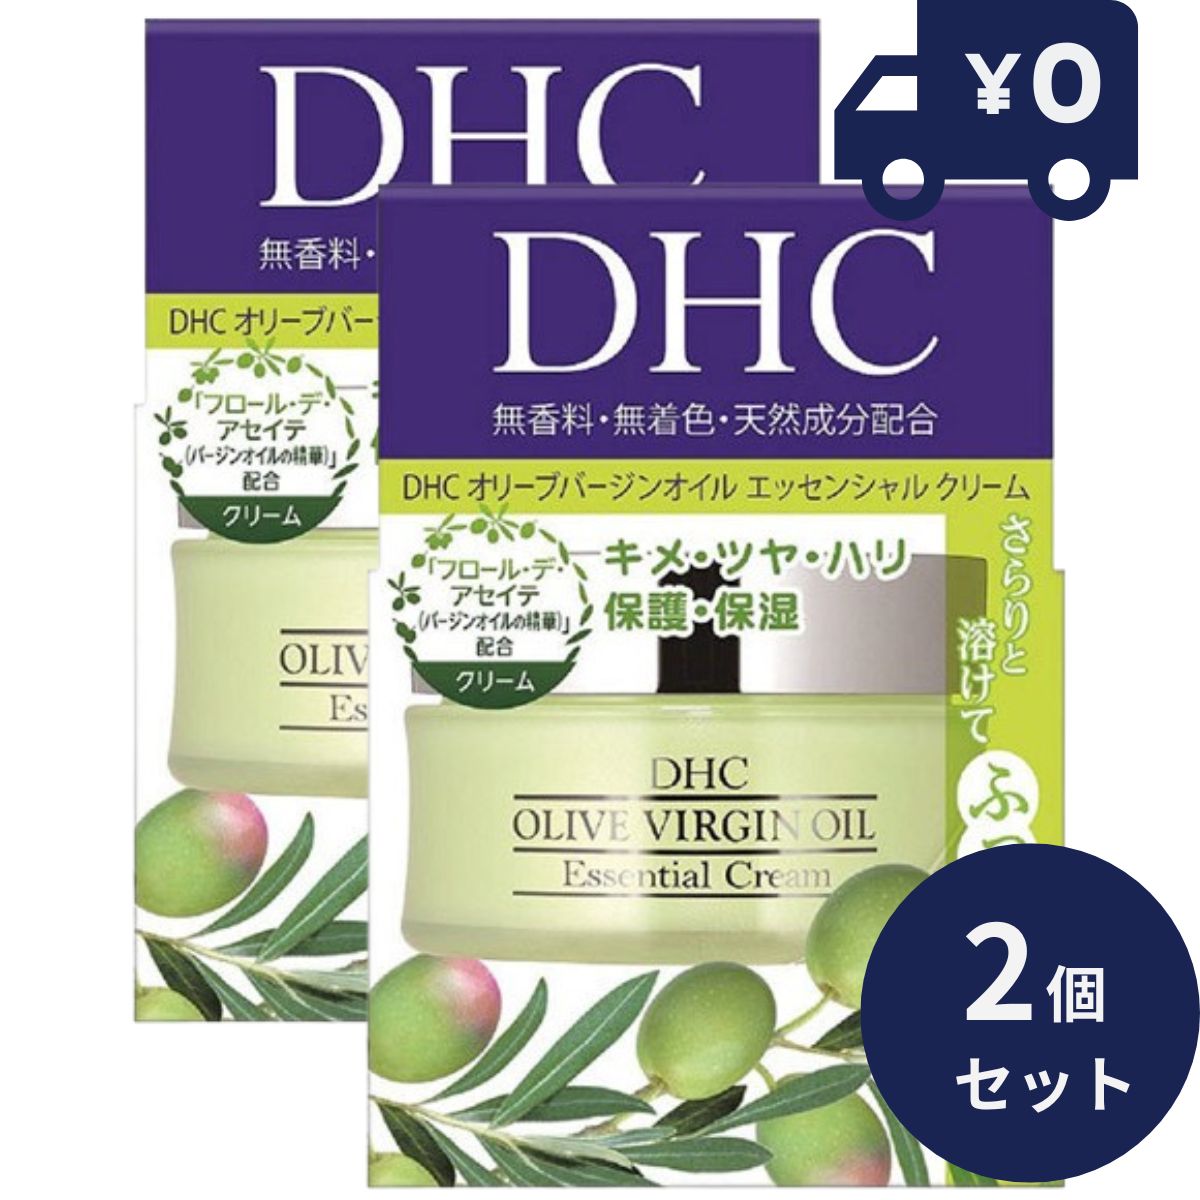 DHC オリーブバージンオイル エッセンシャルクリーム SS 32g 2個セット 化粧下地 化粧品　オリーブ果実油 弾力 持続